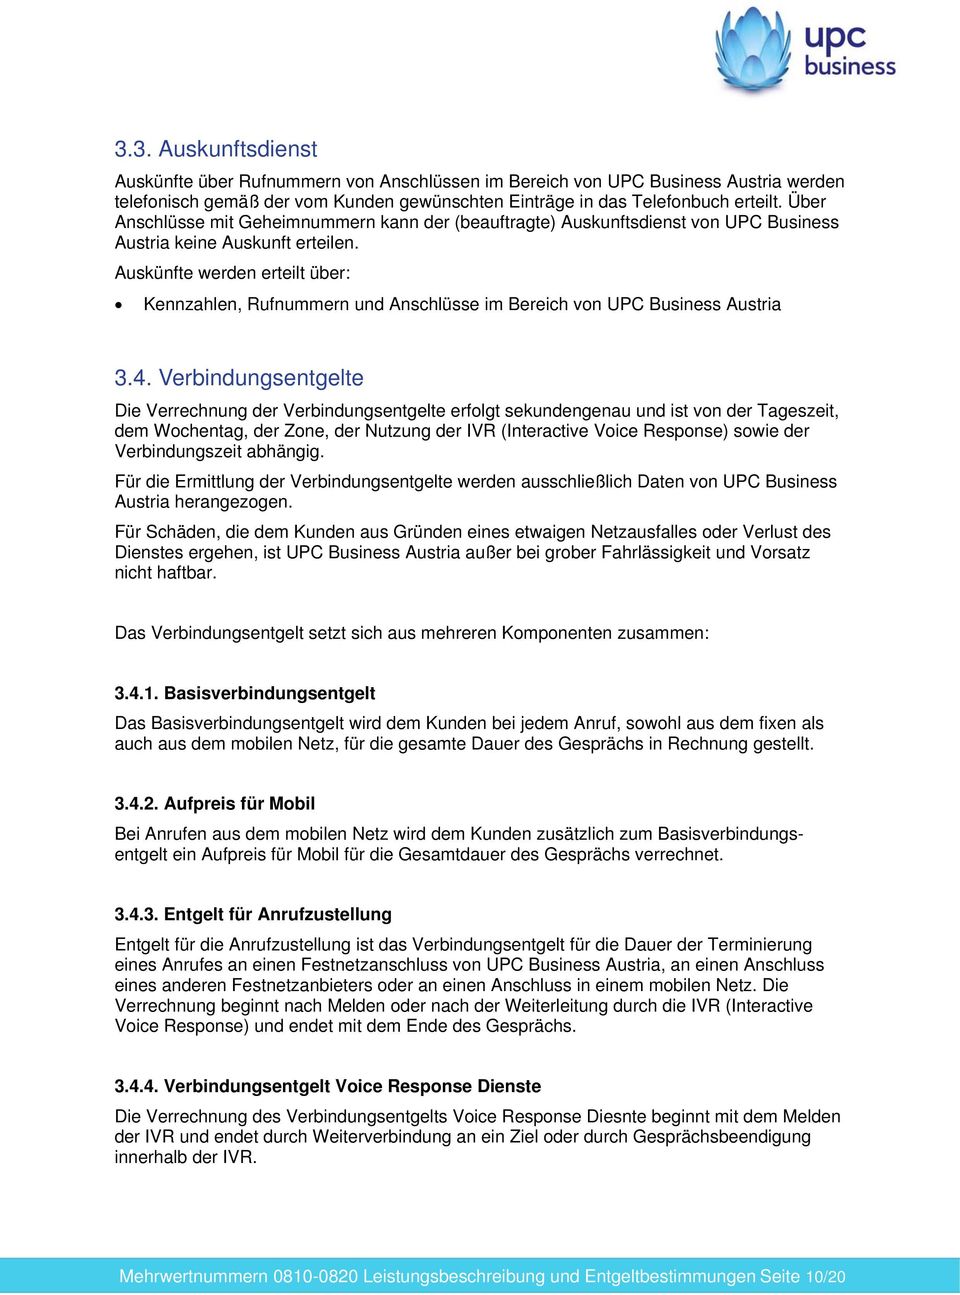 Auskünfte werden erteilt über: Kennzahlen, Rufnummern und Anschlüsse im Bereich von UPC Business Austria 3.4.